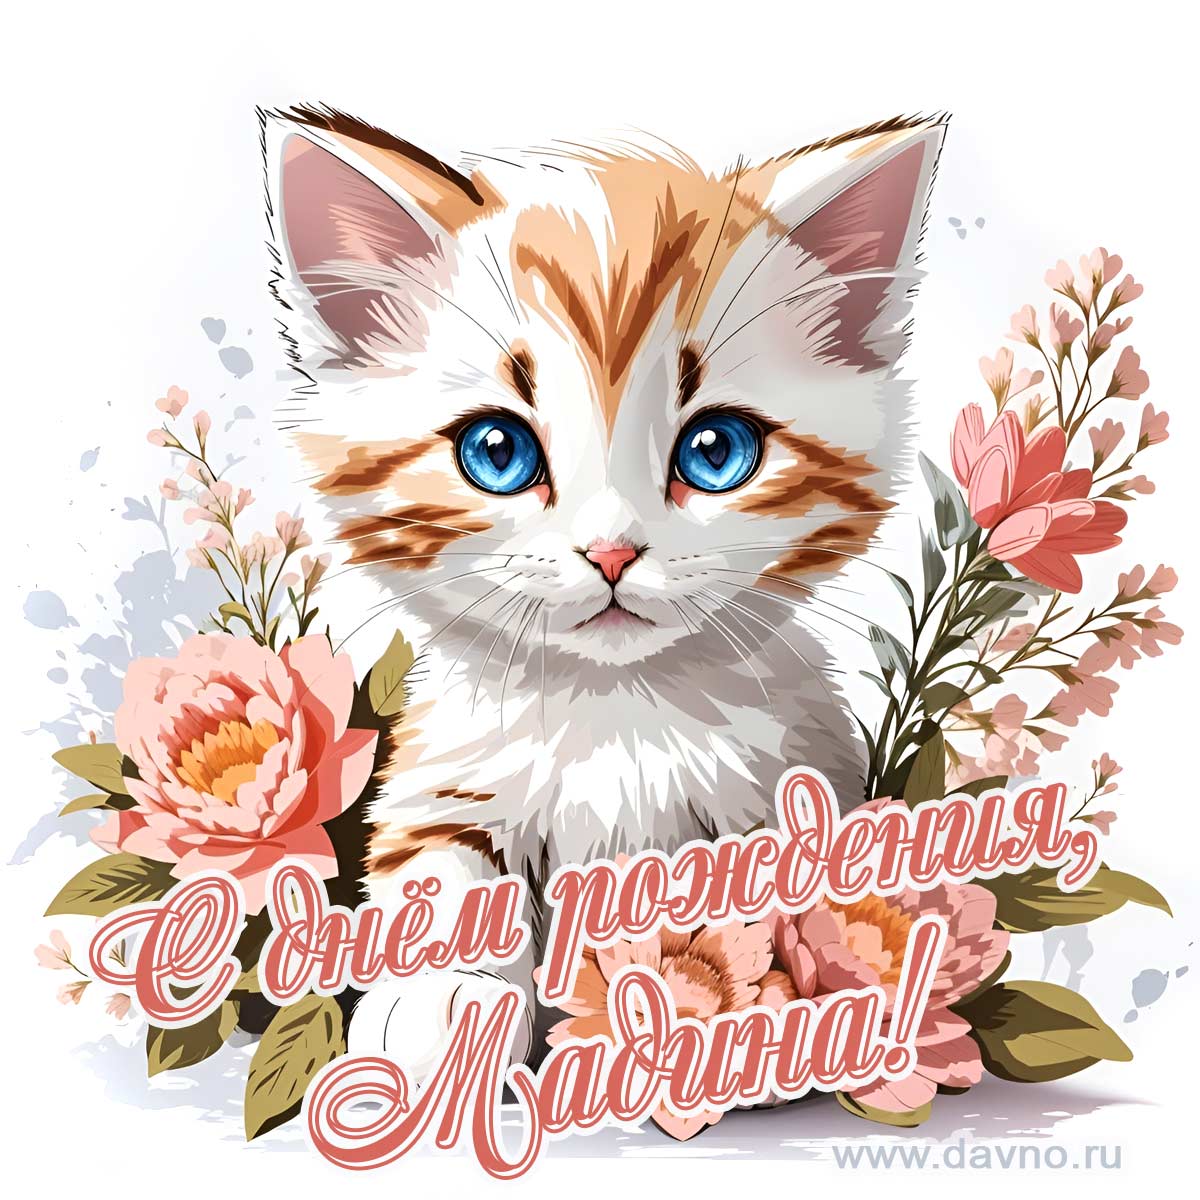 Новая рисованная поздравительная открытка для Мадины с котёнком